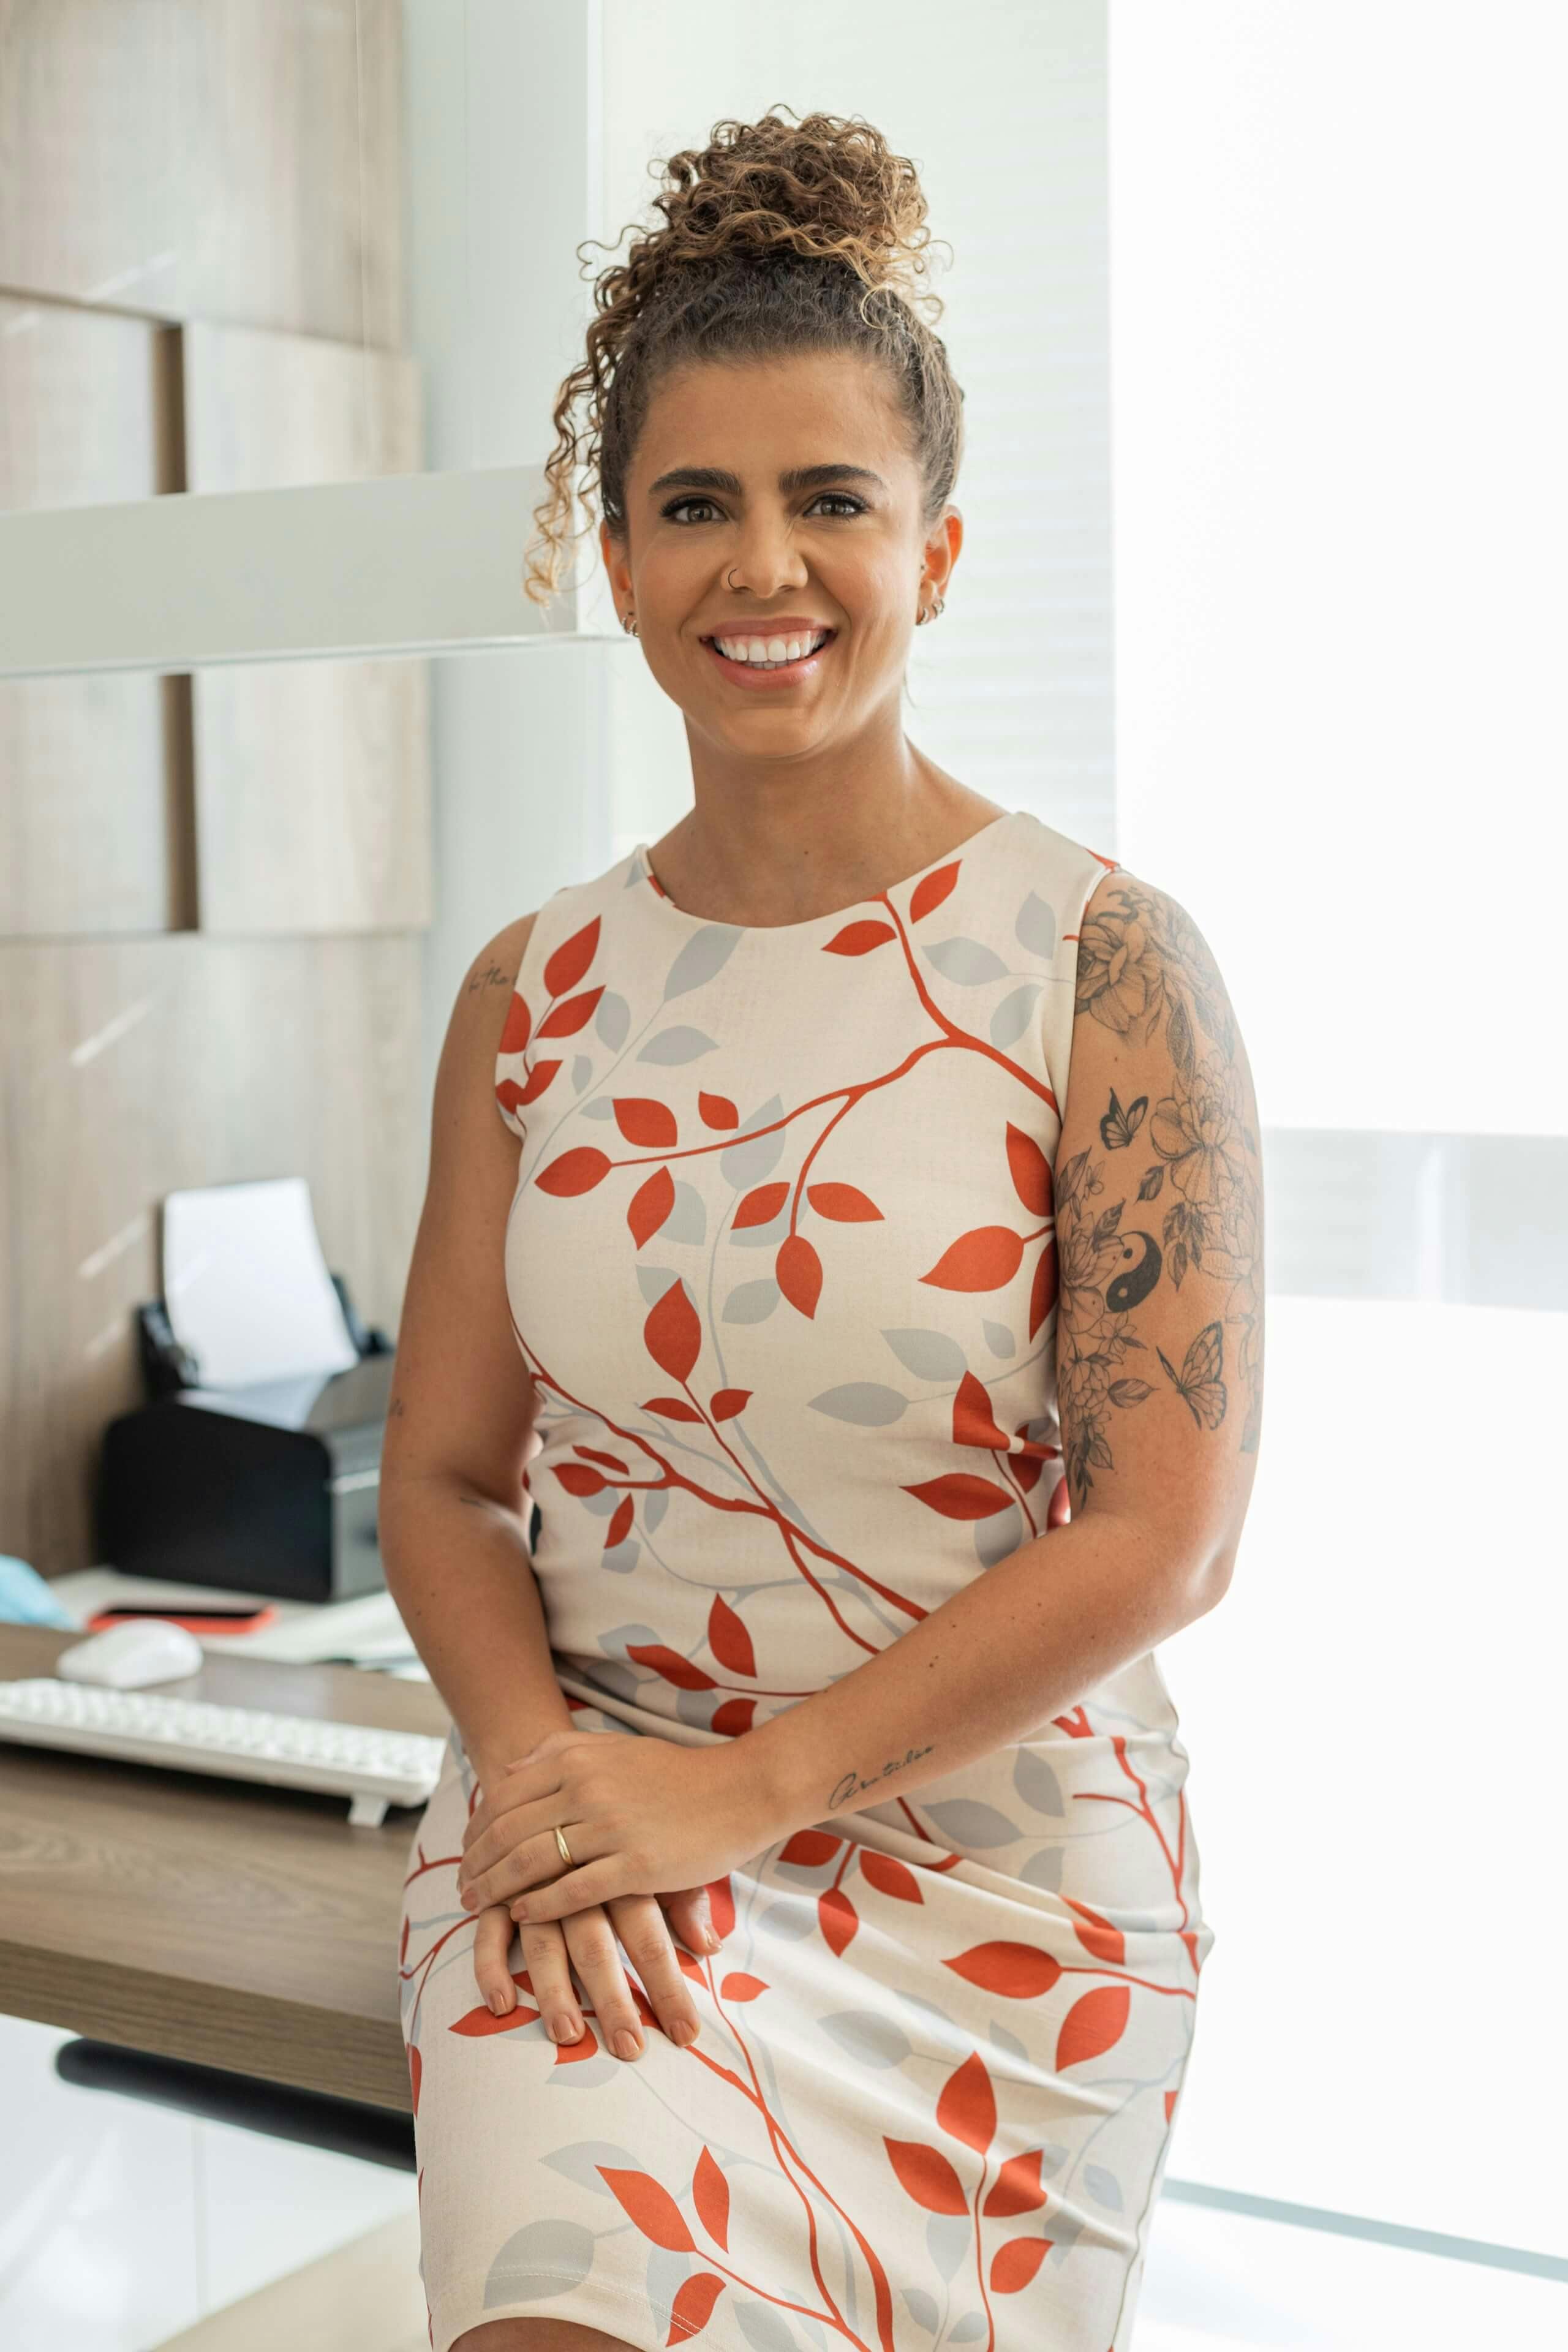 Foto profissional da Dra. Naiara Galvão de pé em seu consultório, com um vestido florido branco com detalhes vermelhos, exibindo um largo e caloroso sorriso.